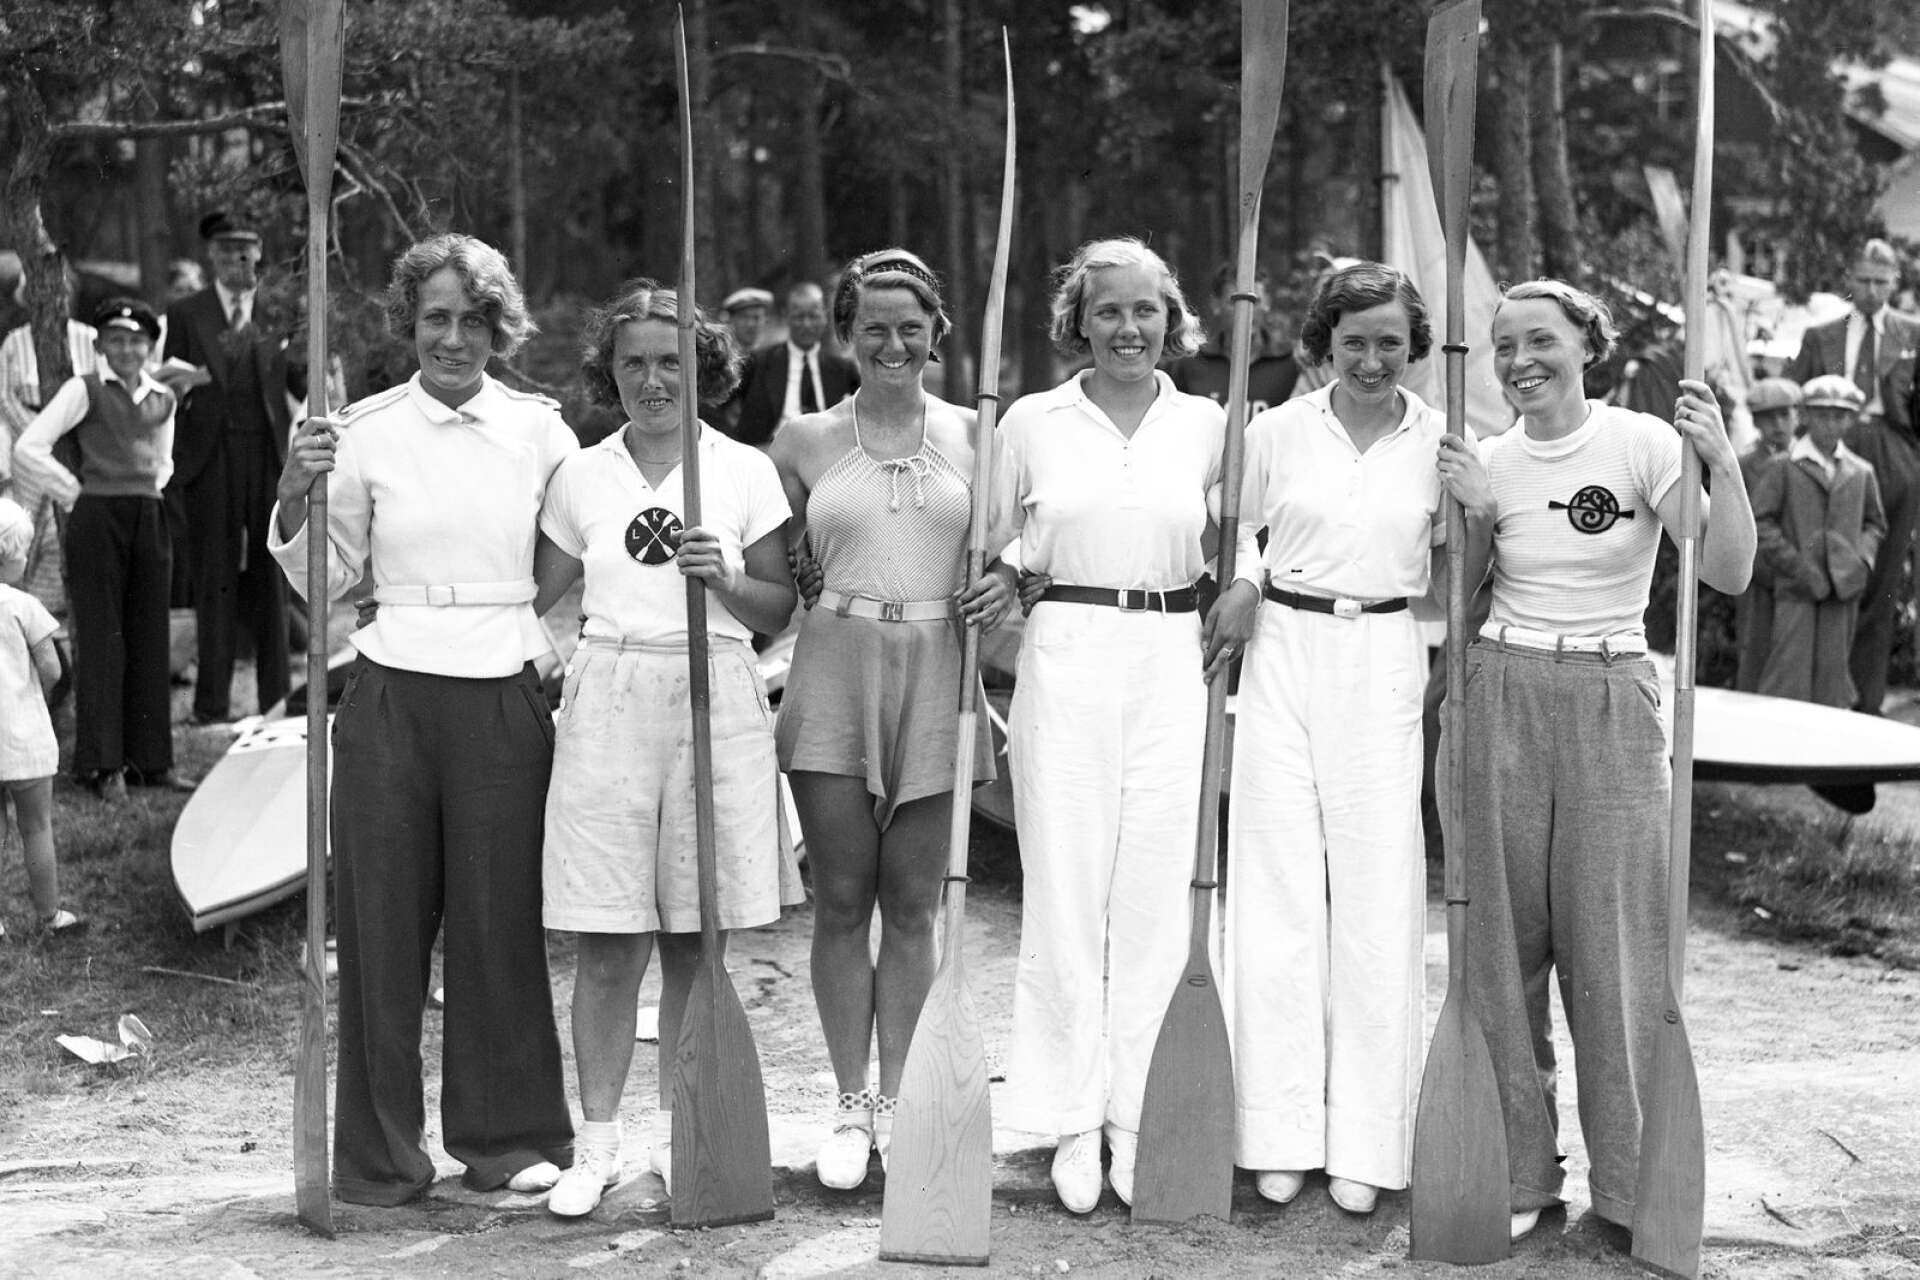 1920-talet stod för ungdomen och 1930-talet för folkhälsan. Båda decenniernas anda präglade modet där kvinnor kunde idrotta i byxor utan att någon höjde på ögonbrynen. Dessutom tillkom en rad olika plagg som passade den aktivare livsstilen.